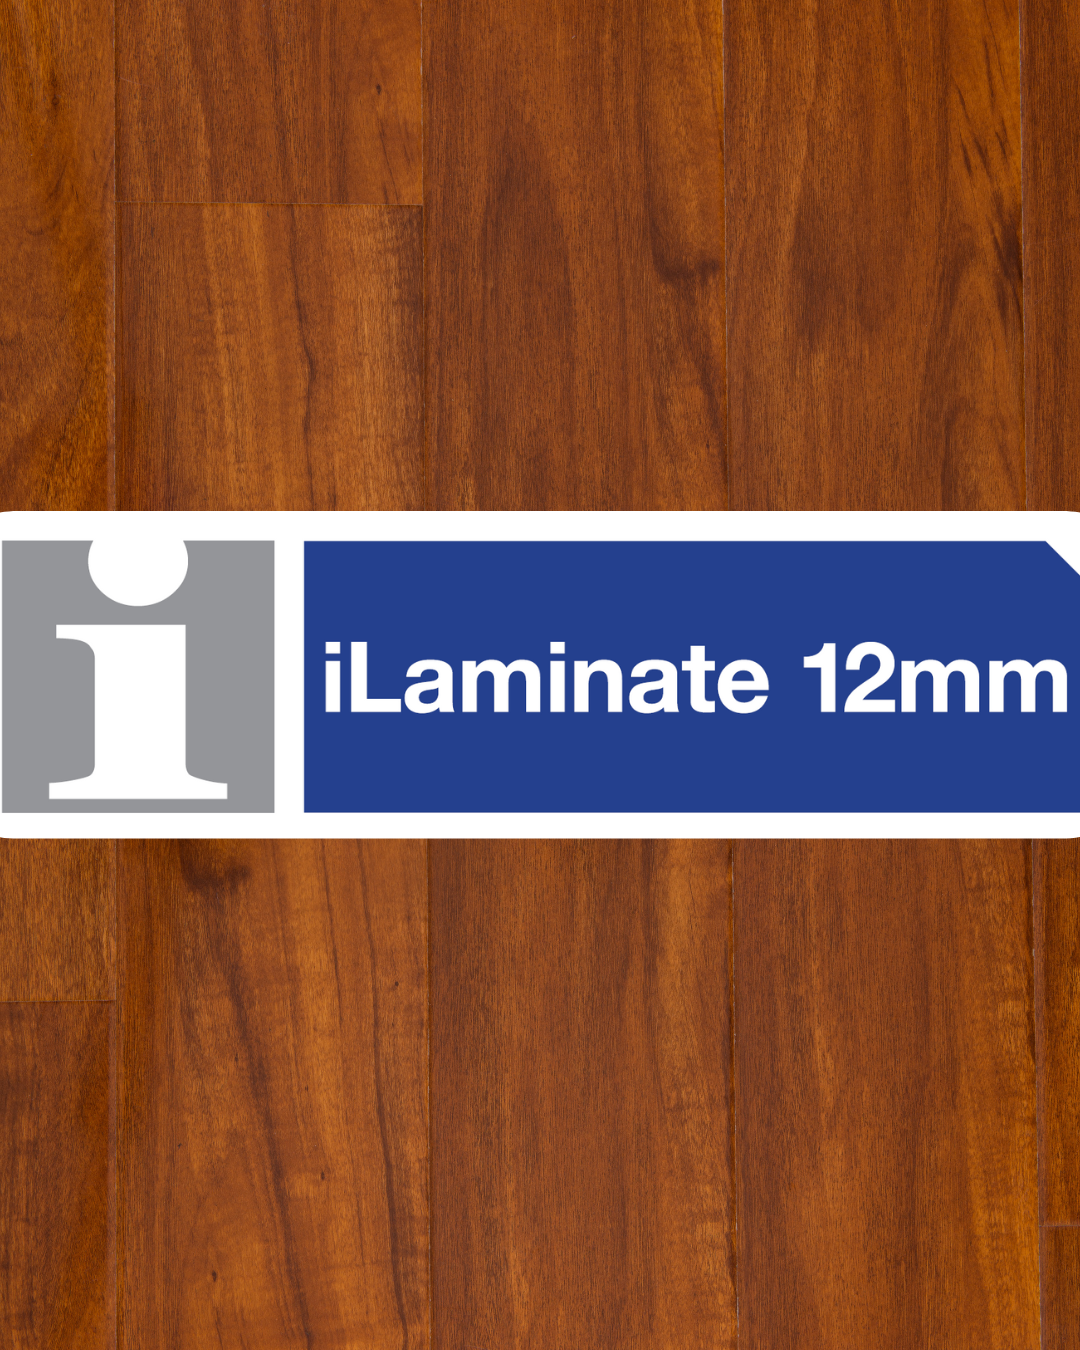 12mm iLaminate